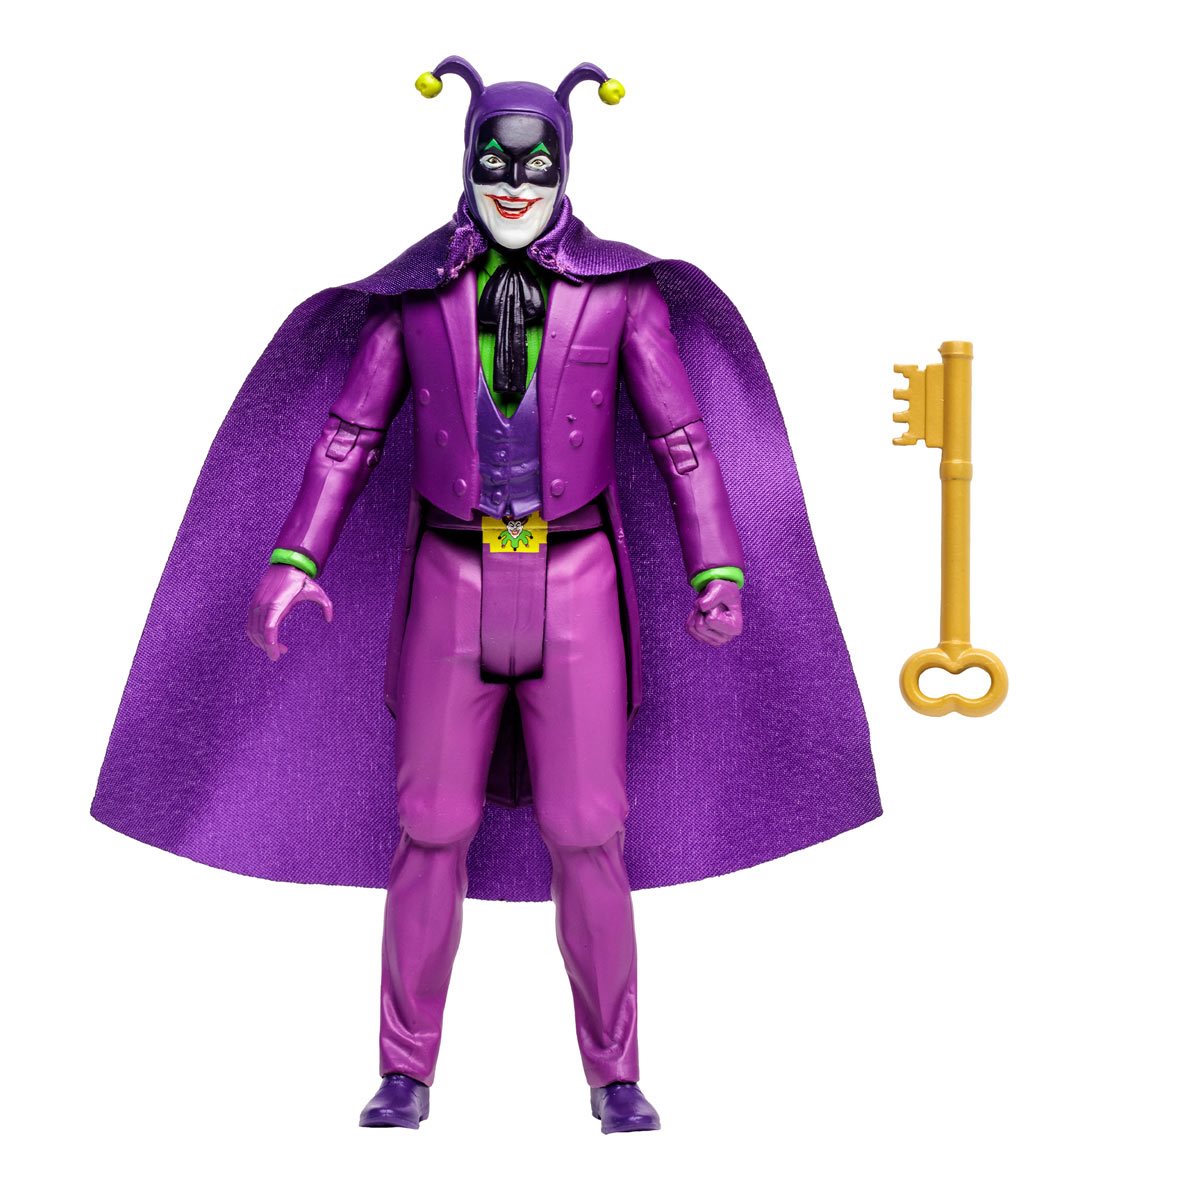 The Joker Batman Action figure - Heretoserveyou